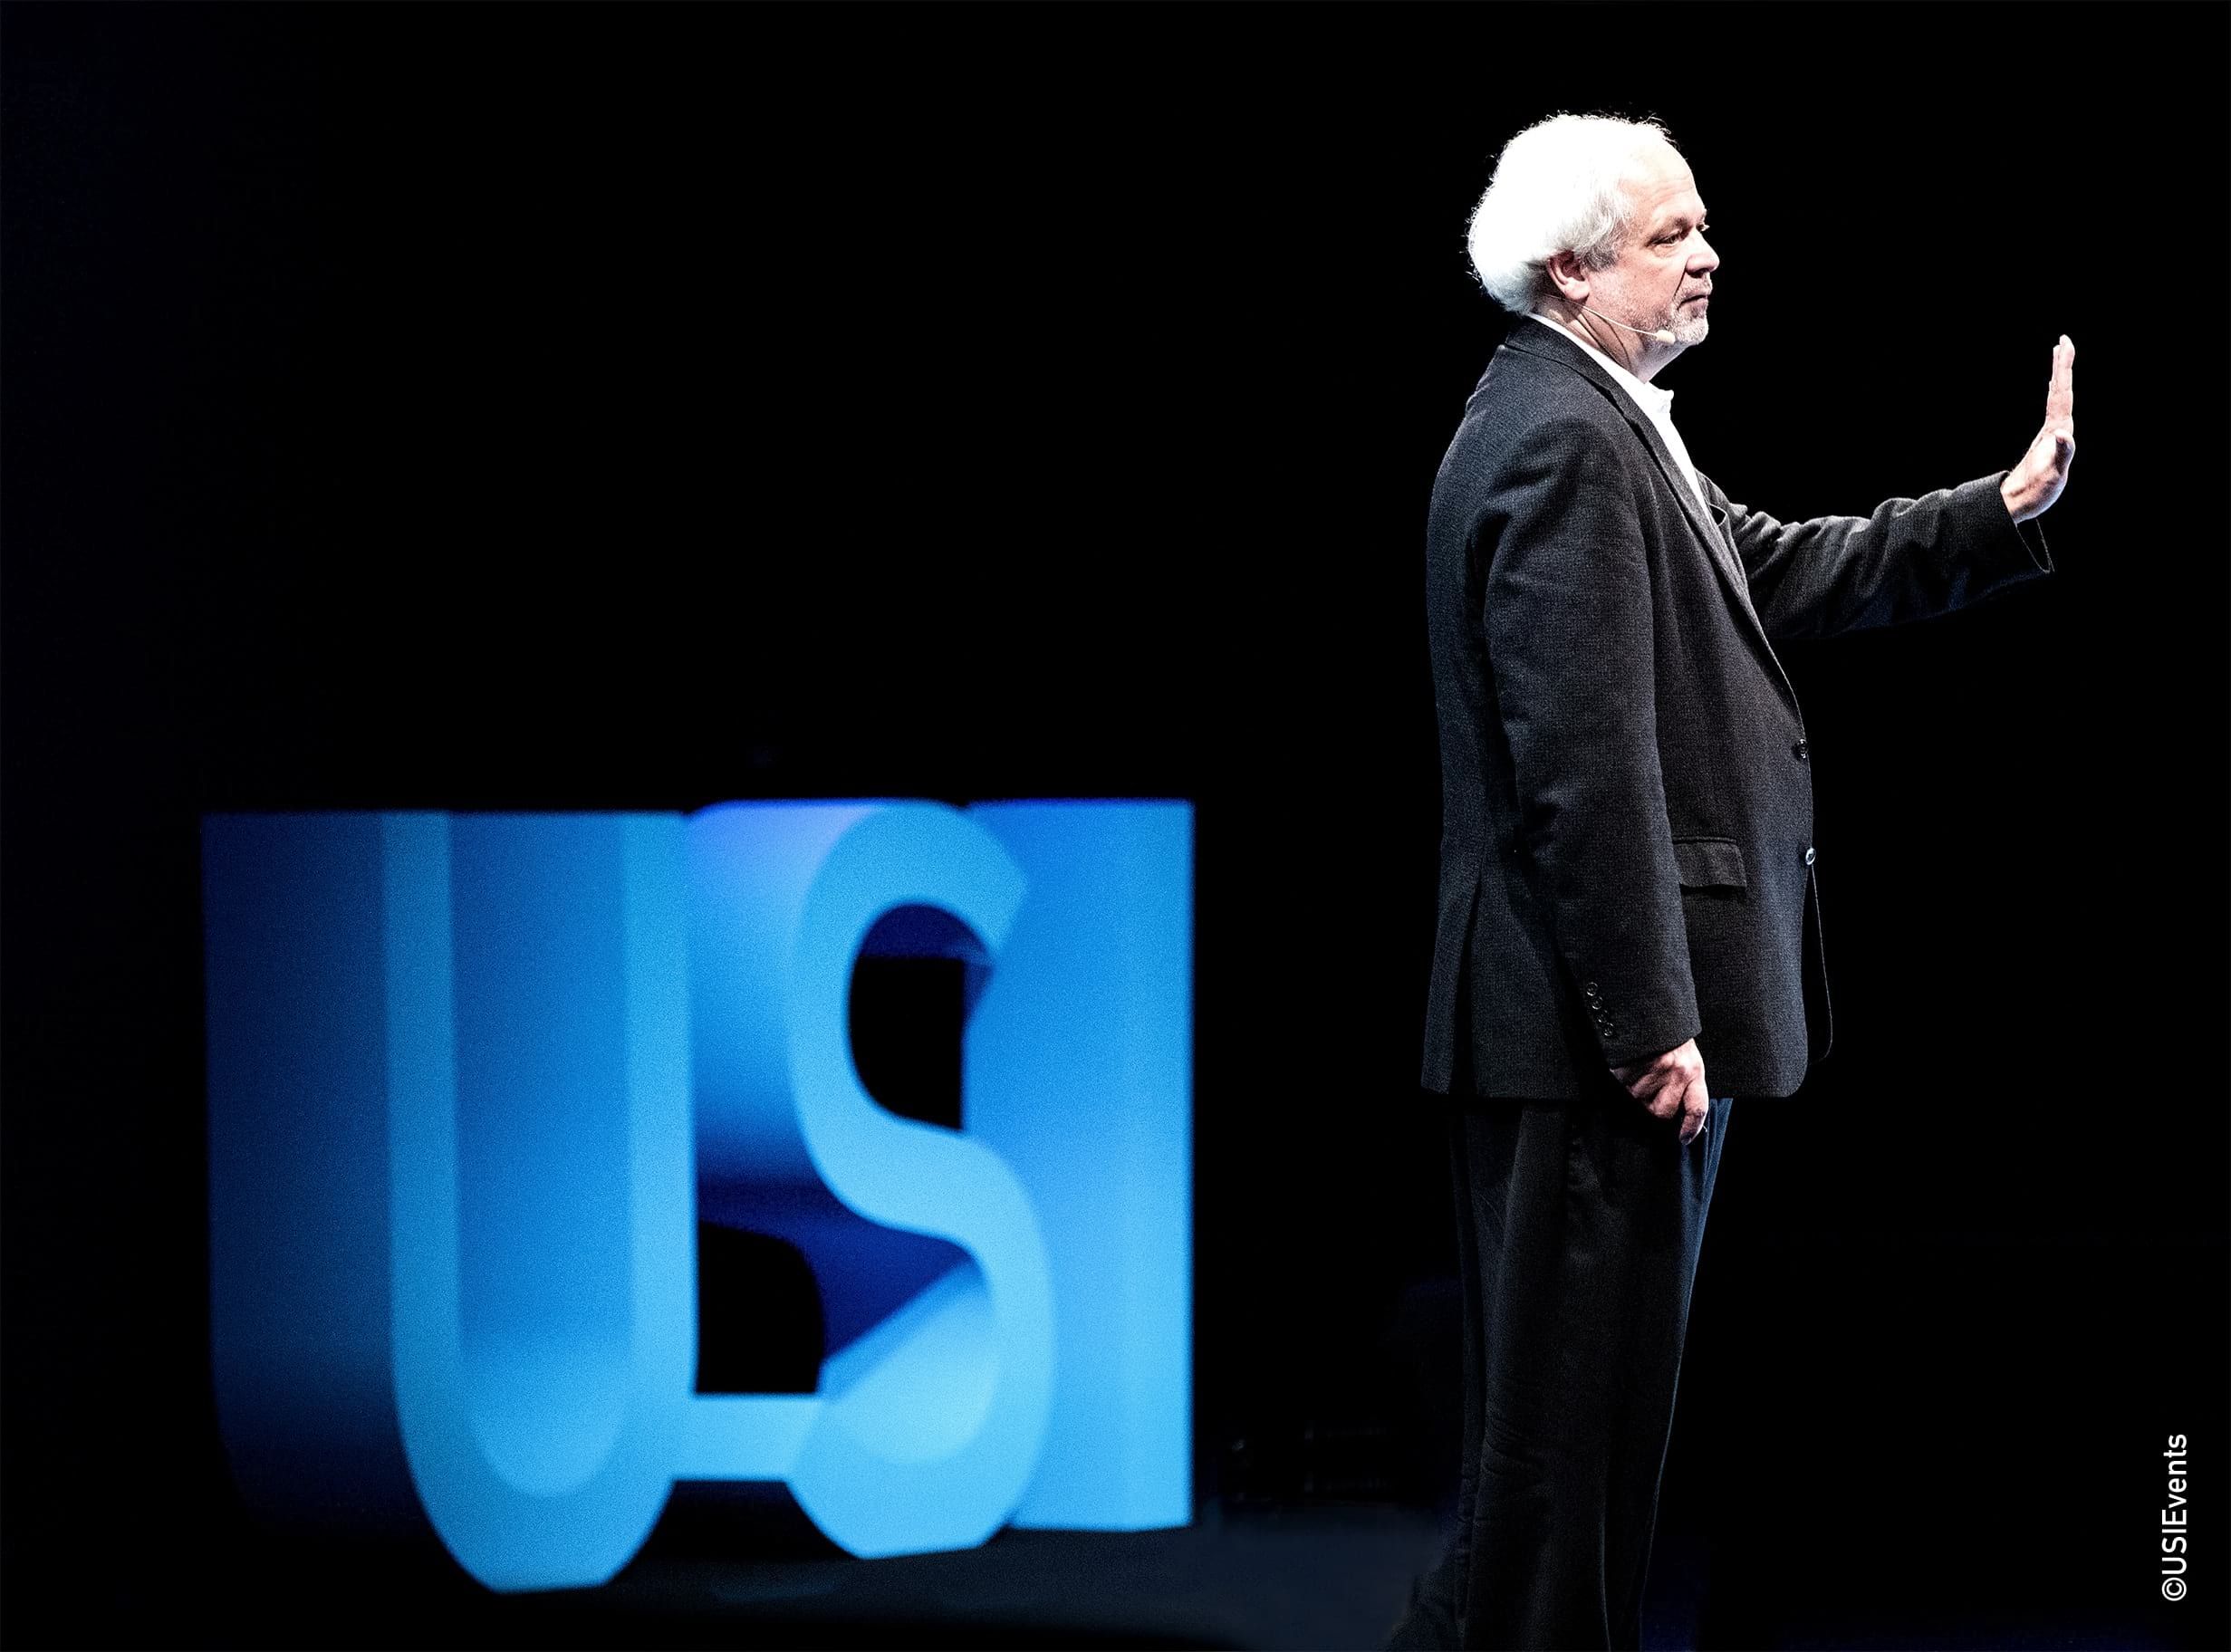 Juan Enriquez sur la scène de la conférence USI durant son talk